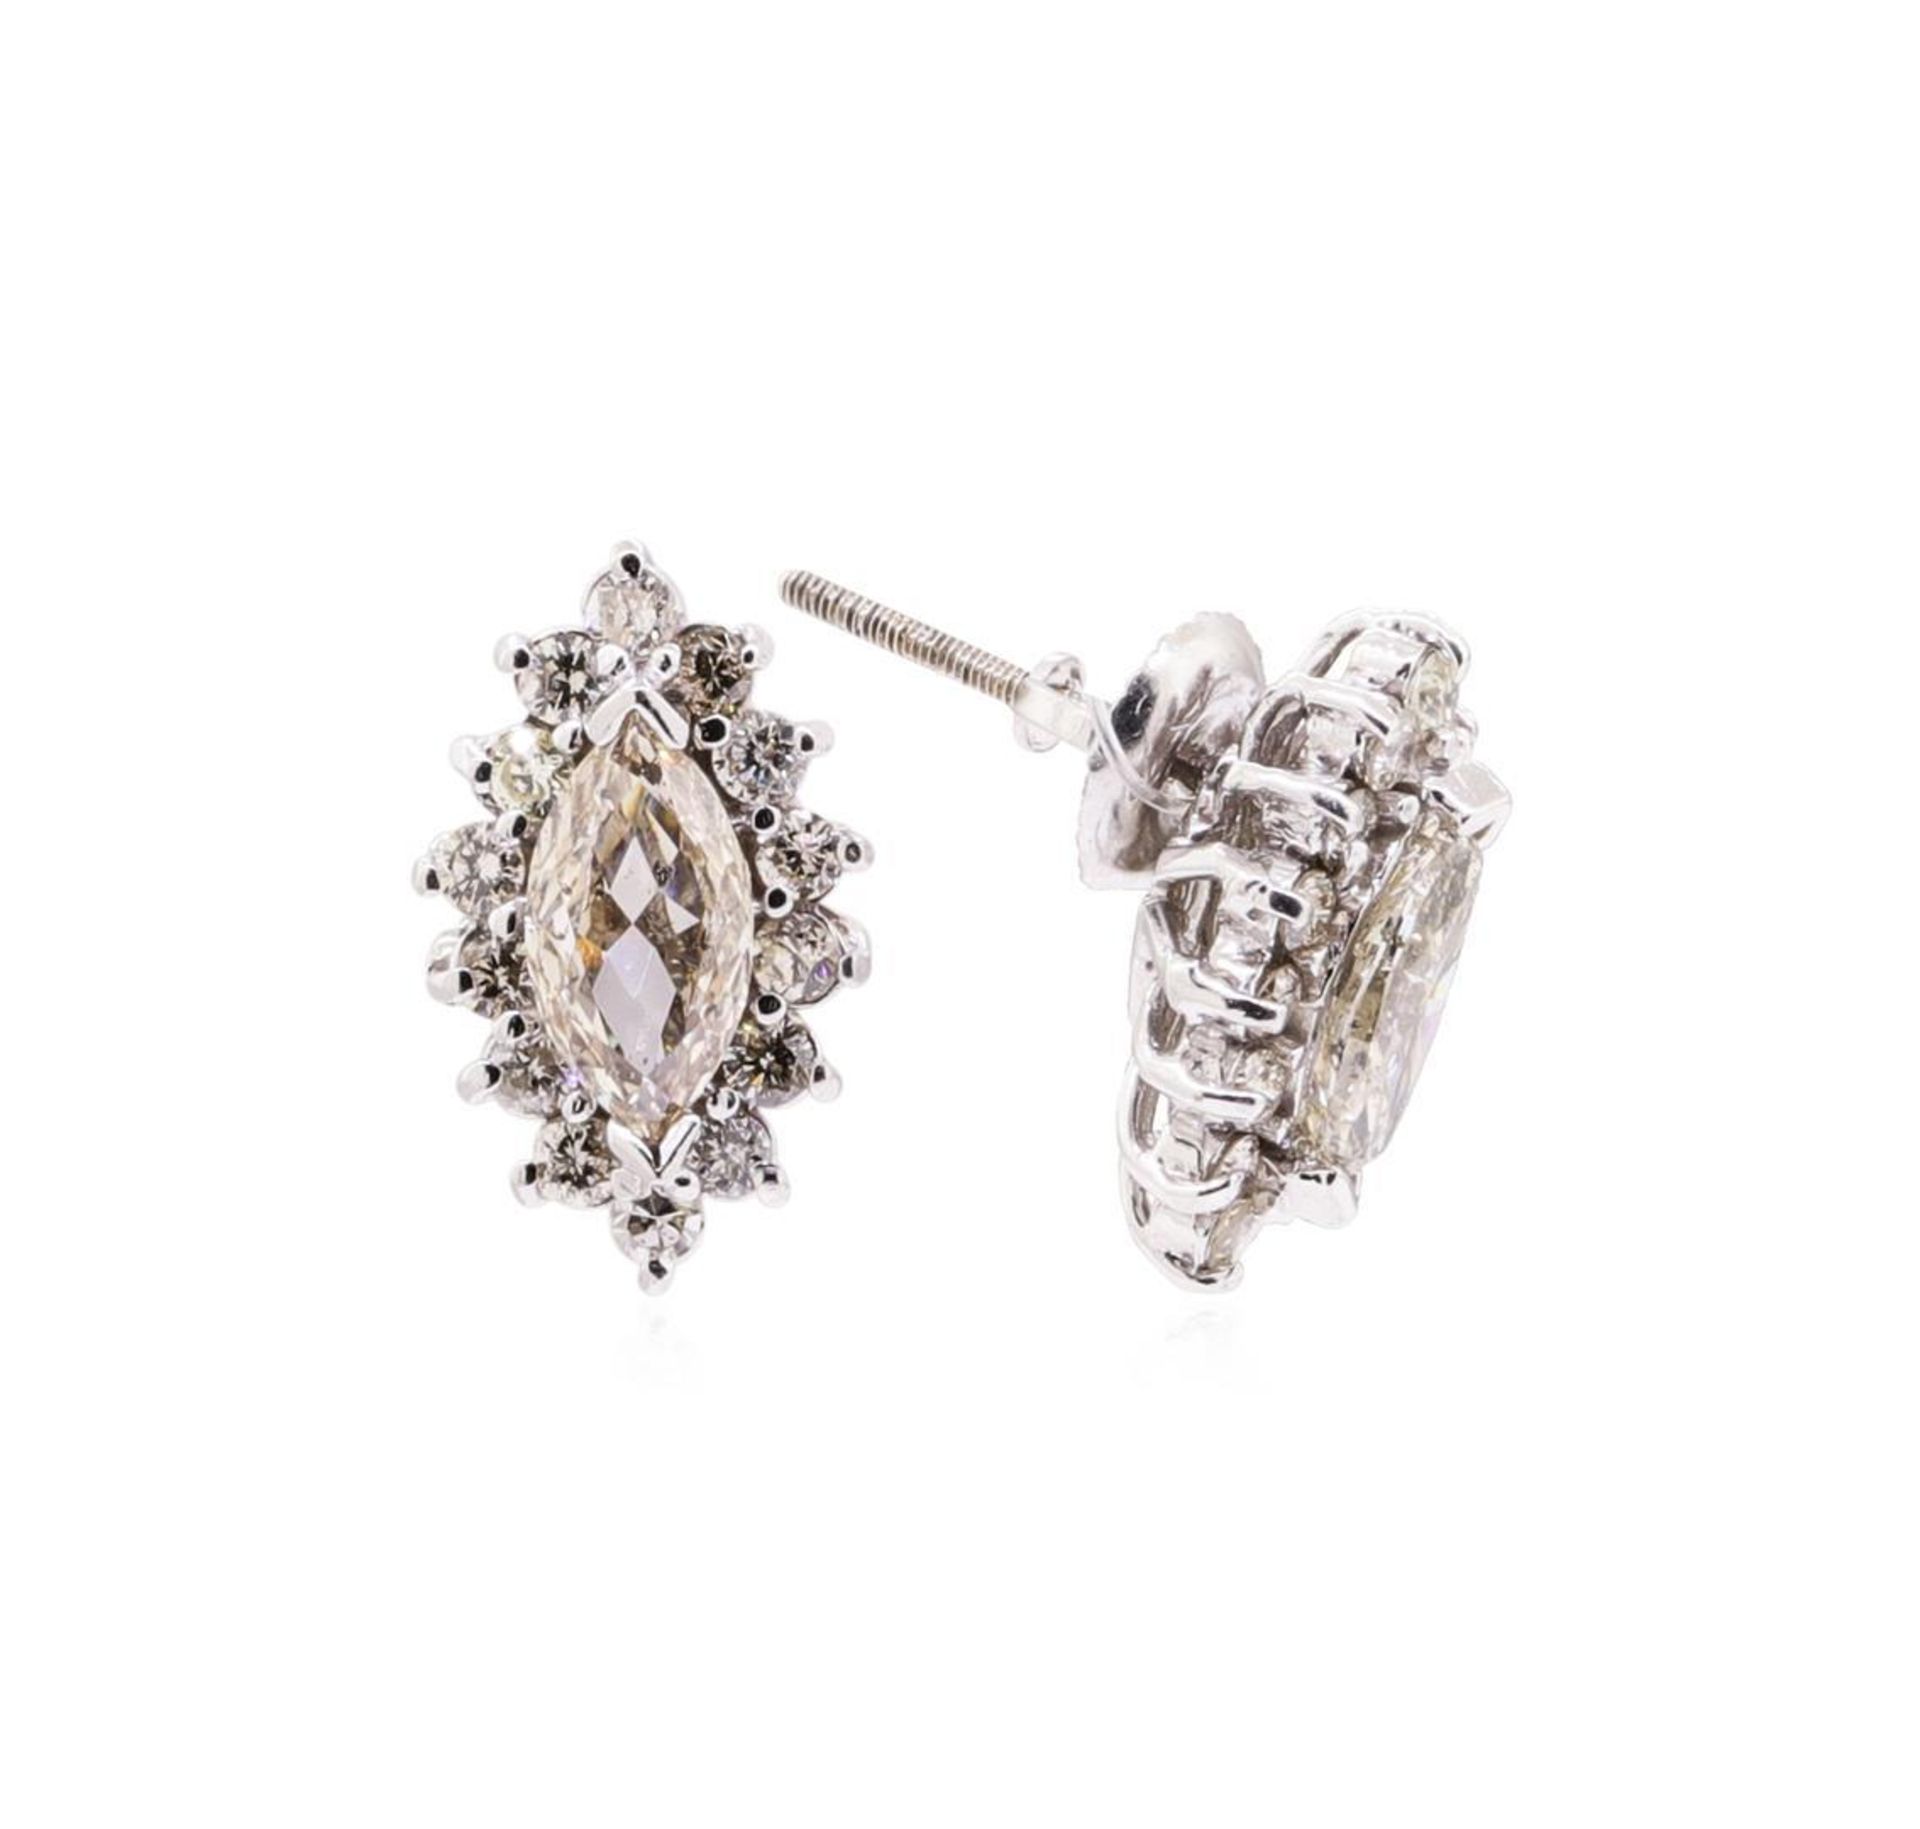 2.00 ctw Diamond Earrings - 14KT White Gold - Image 2 of 3